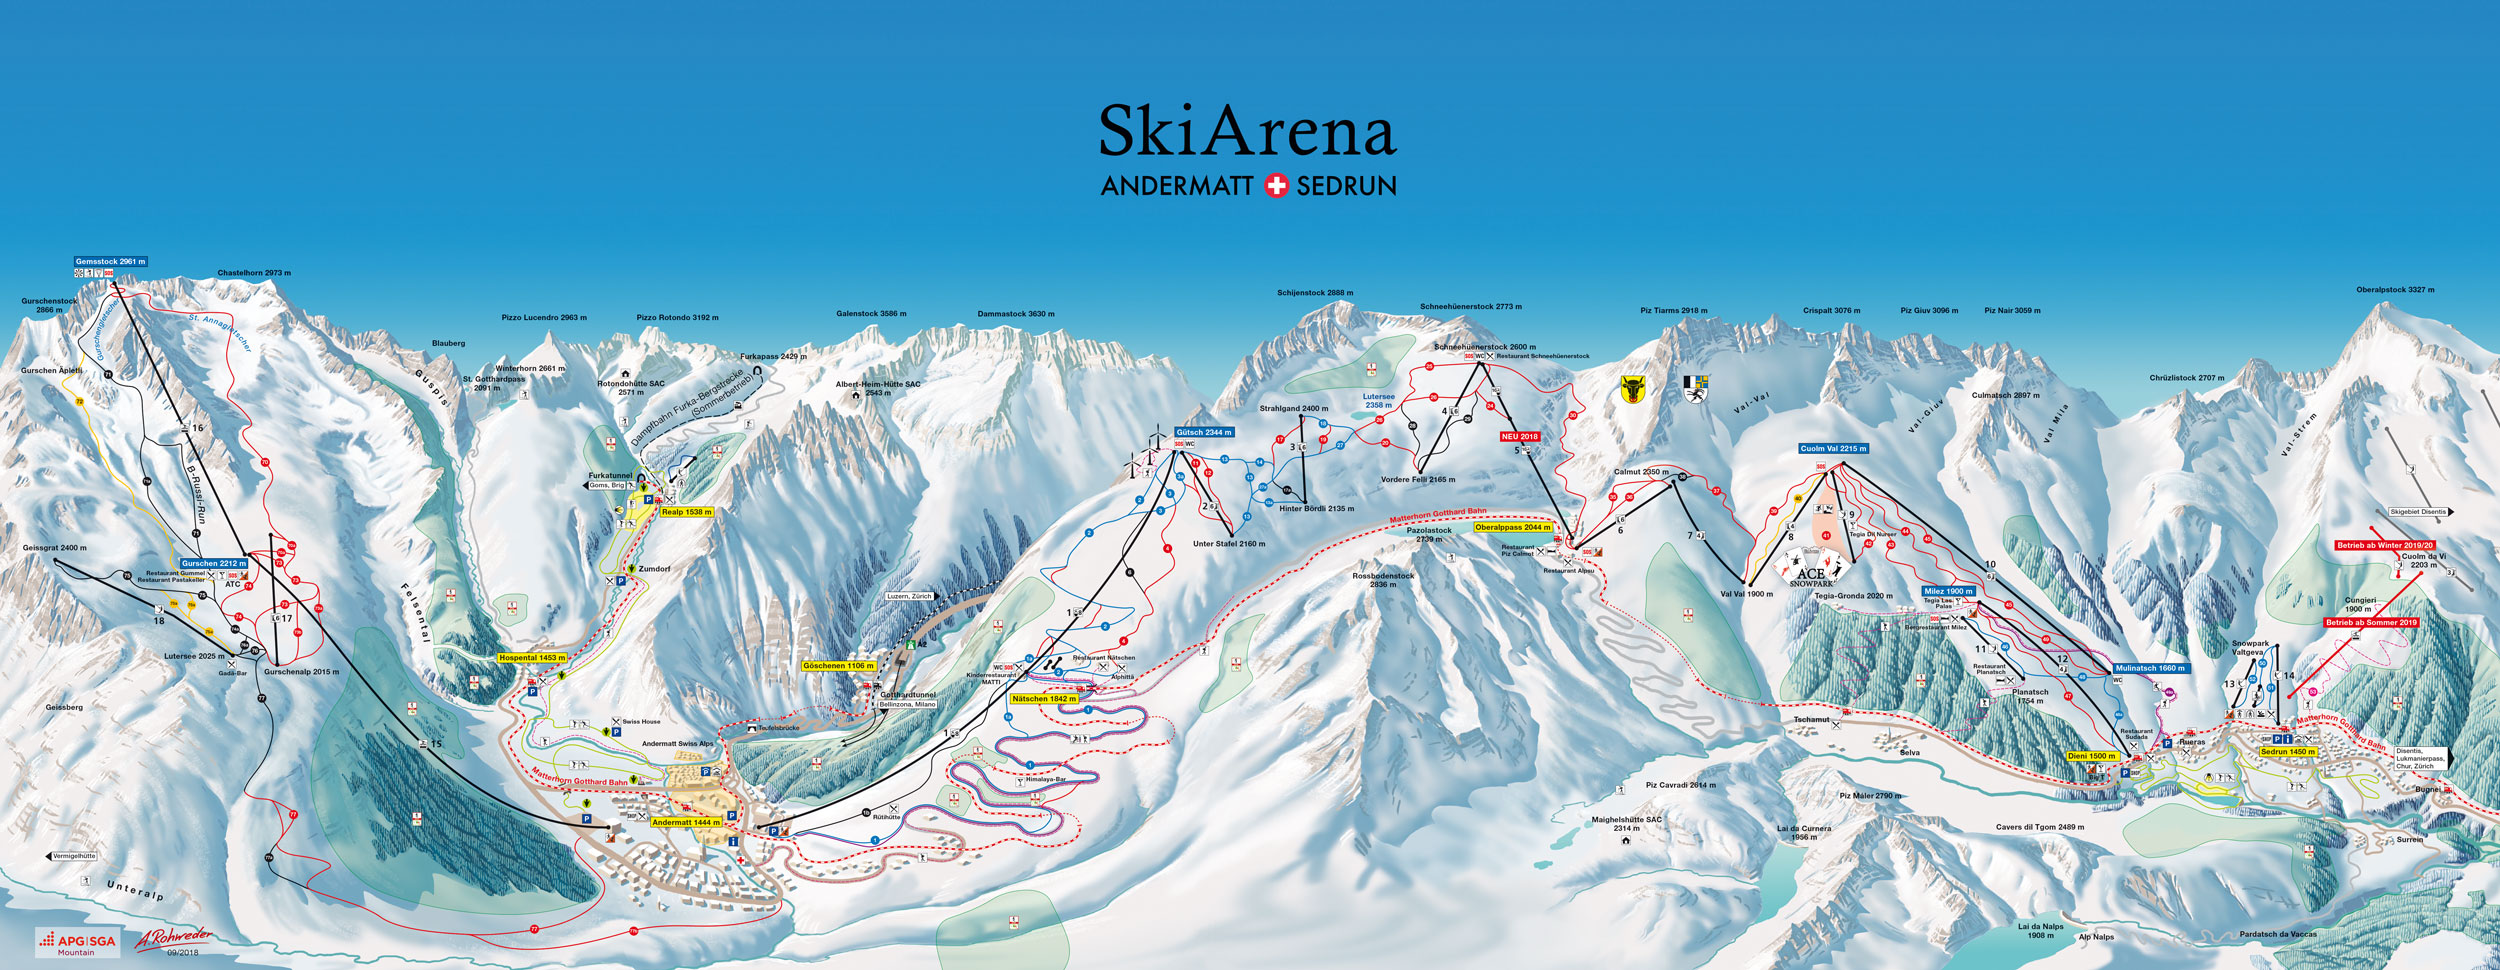 SkiArena Andermatt Sedrun Ski Trail Map